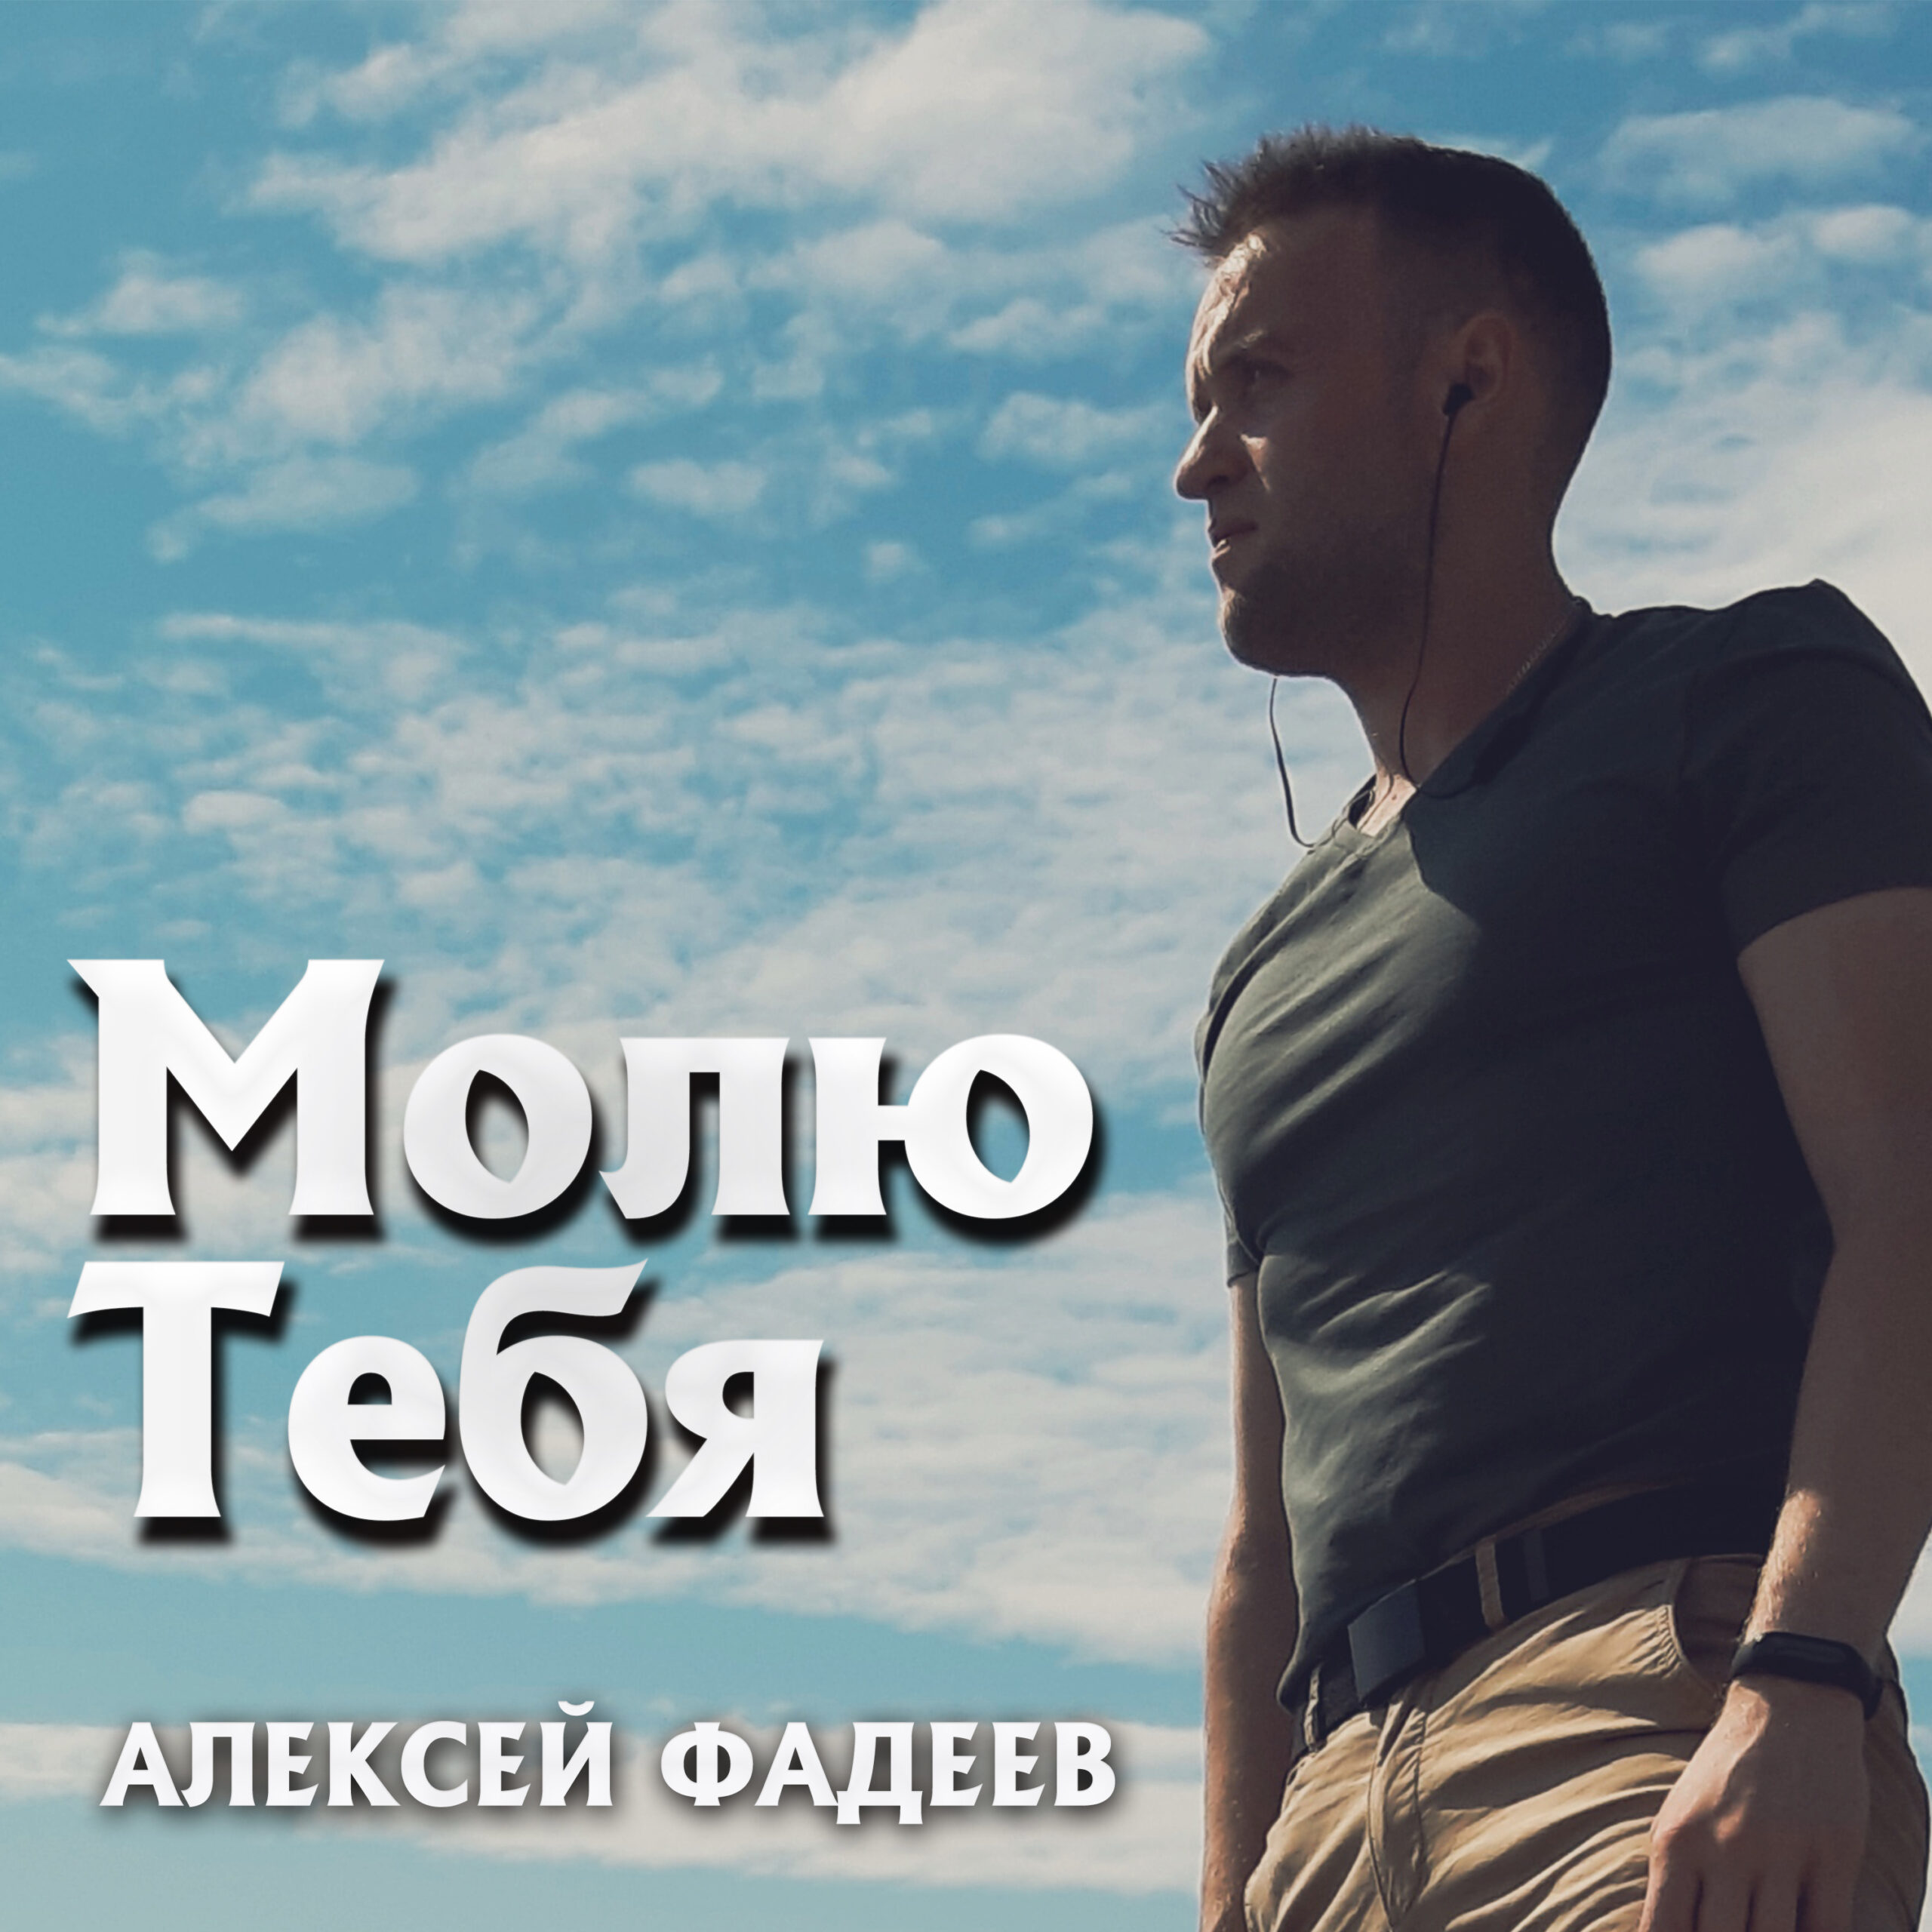 Алексей Фадеев представил новую песню «Молю Тебя»